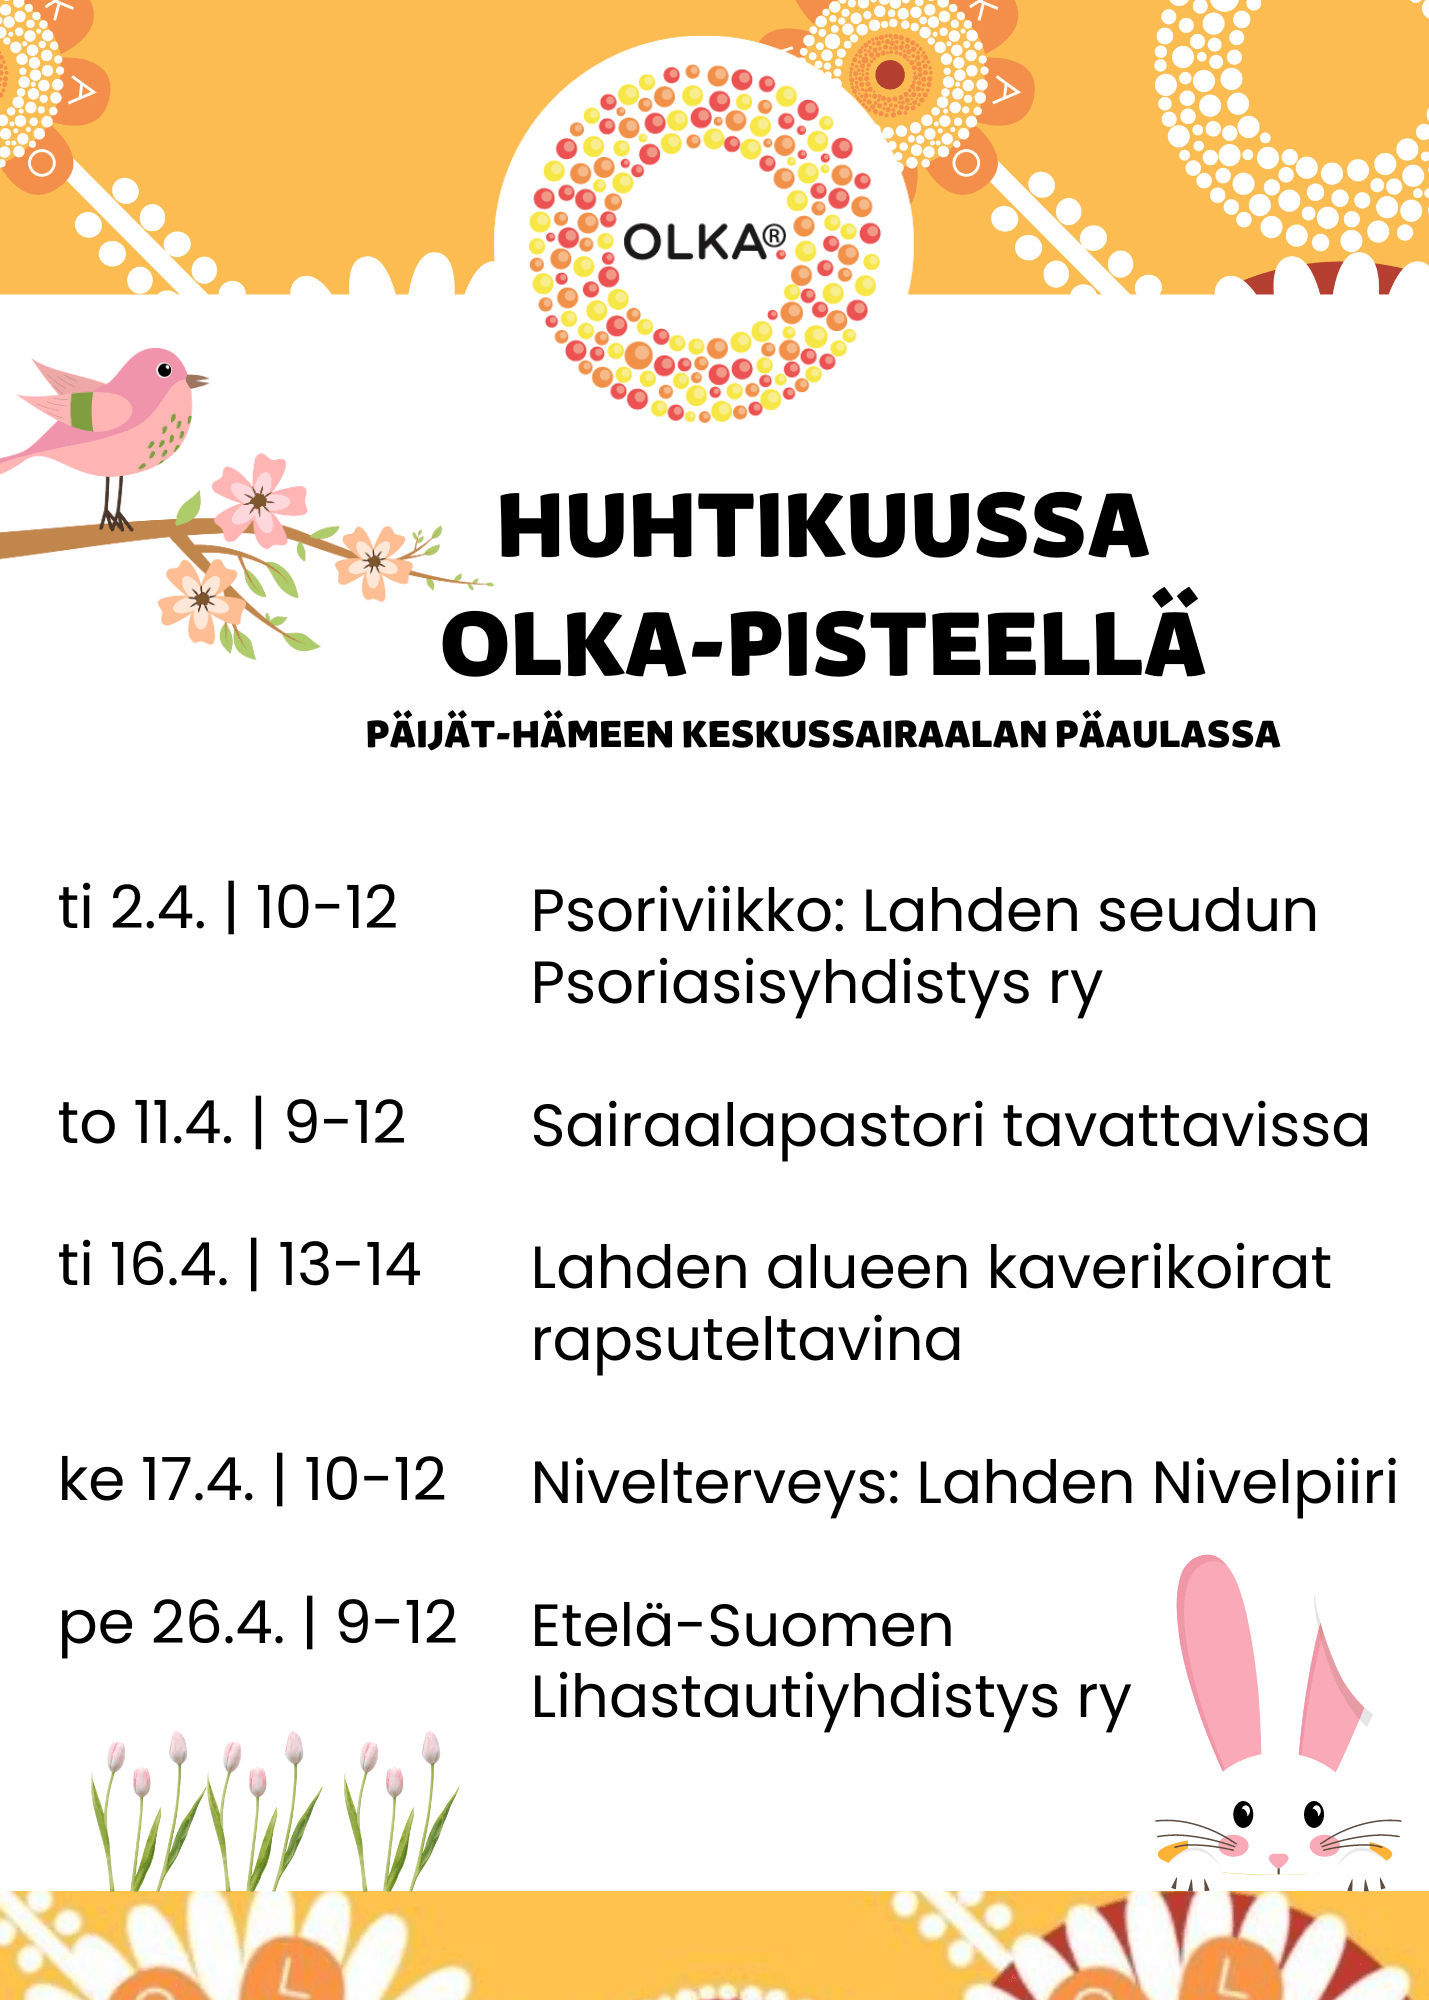 Huhtikuun tapahtumat Päijät-Hämeen keskussairaalan OLKA-pisteellä